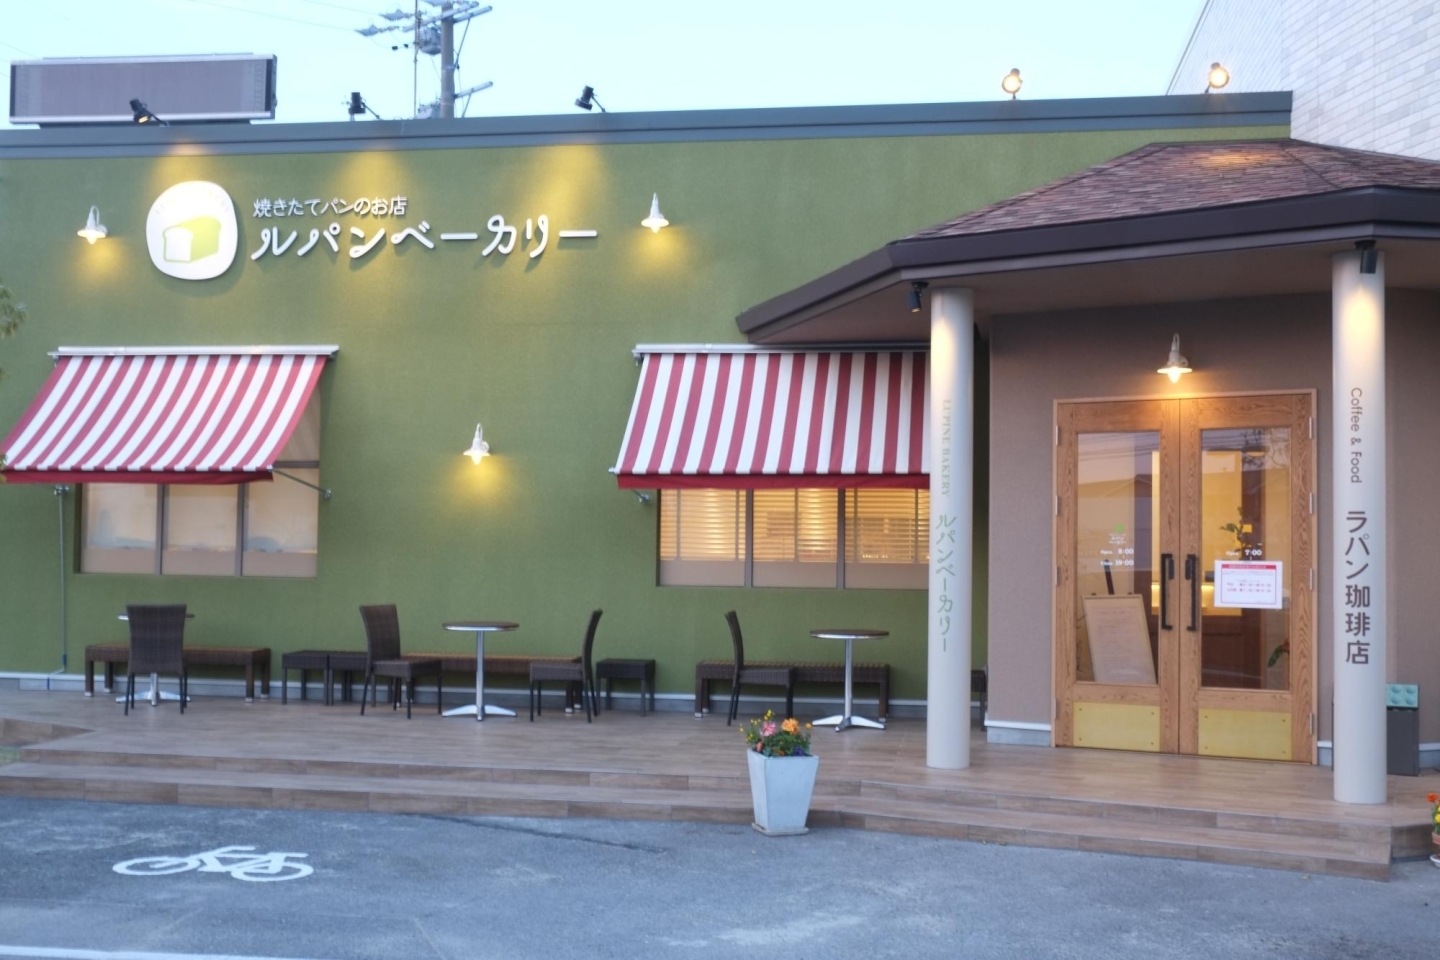 パン屋さんのカフェ しかもめちゃオシャレで広い 旬な地元ネタ まいぷれ 西尾 碧南 高浜